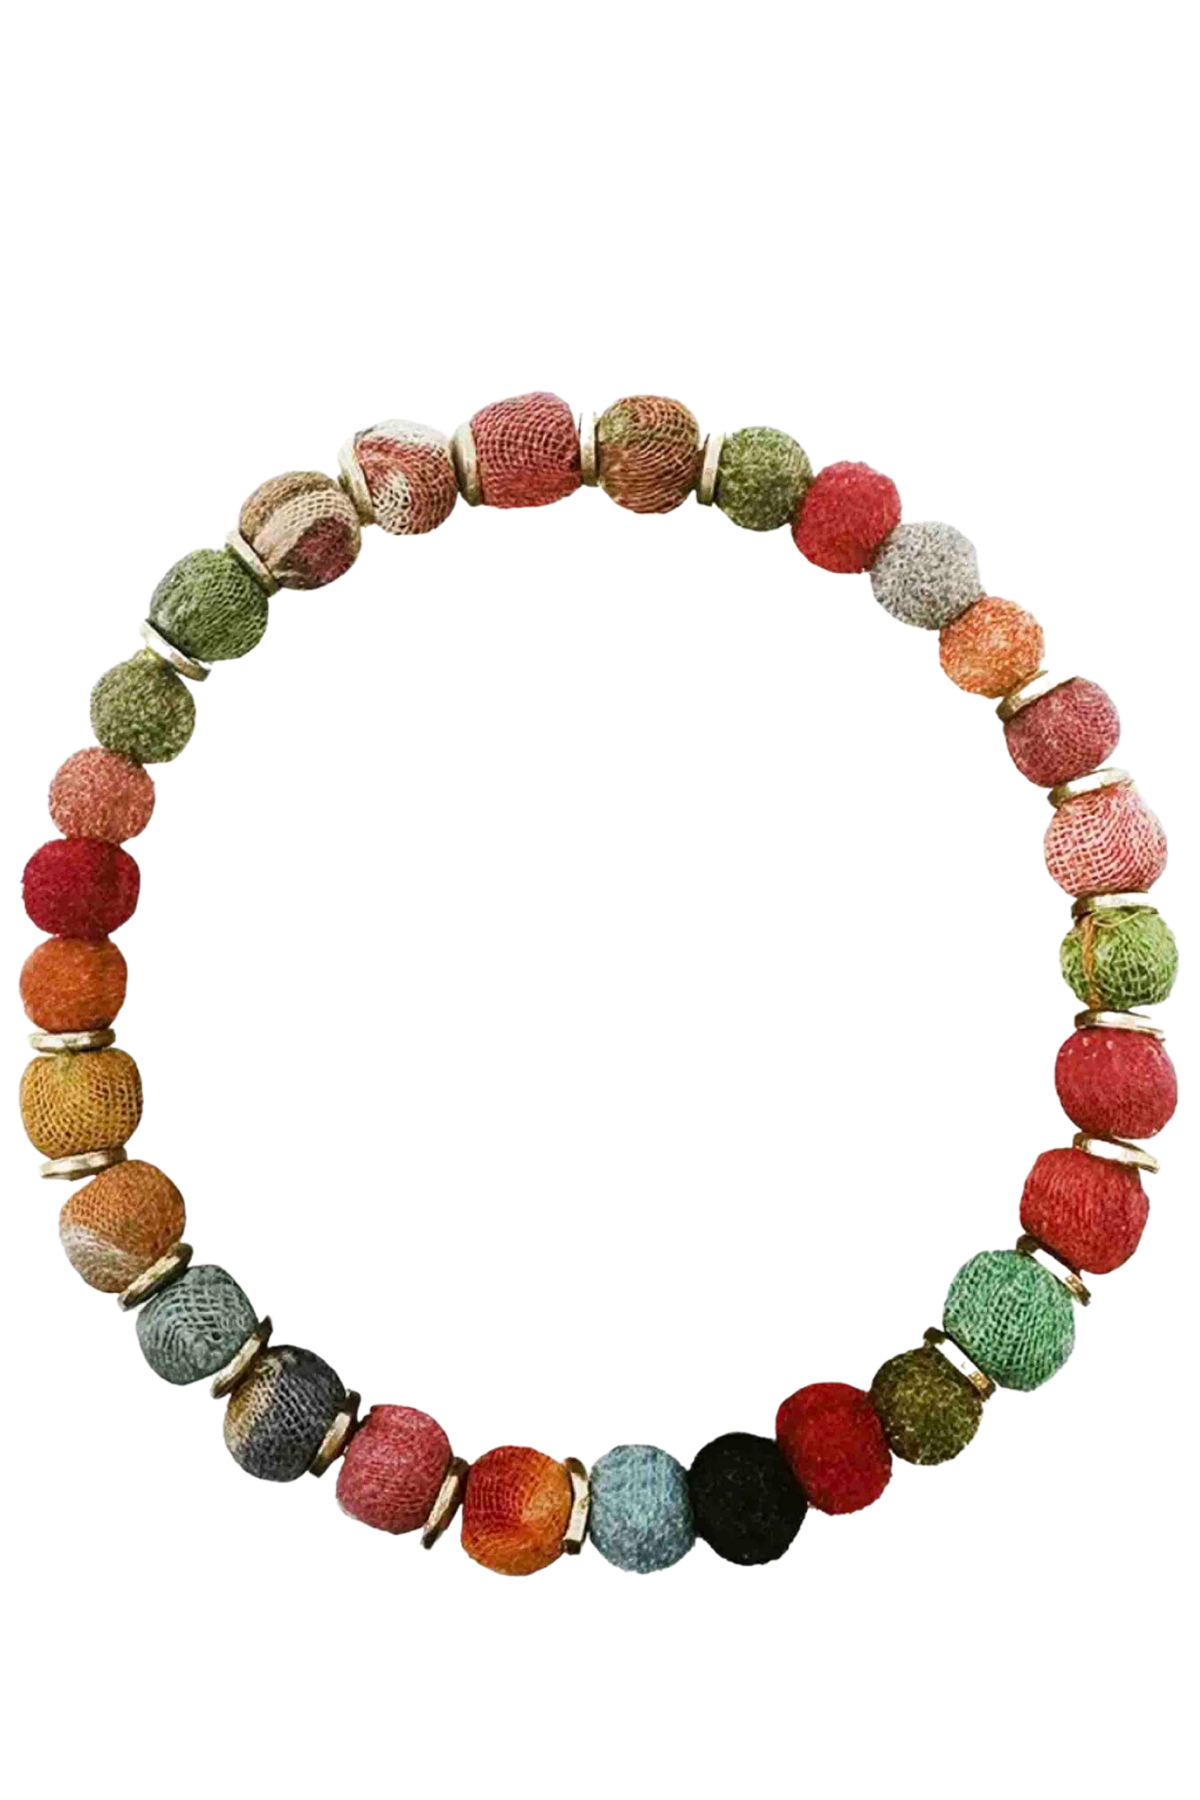 Multicolored Kantha Pom Pom Bracelet by World Finds